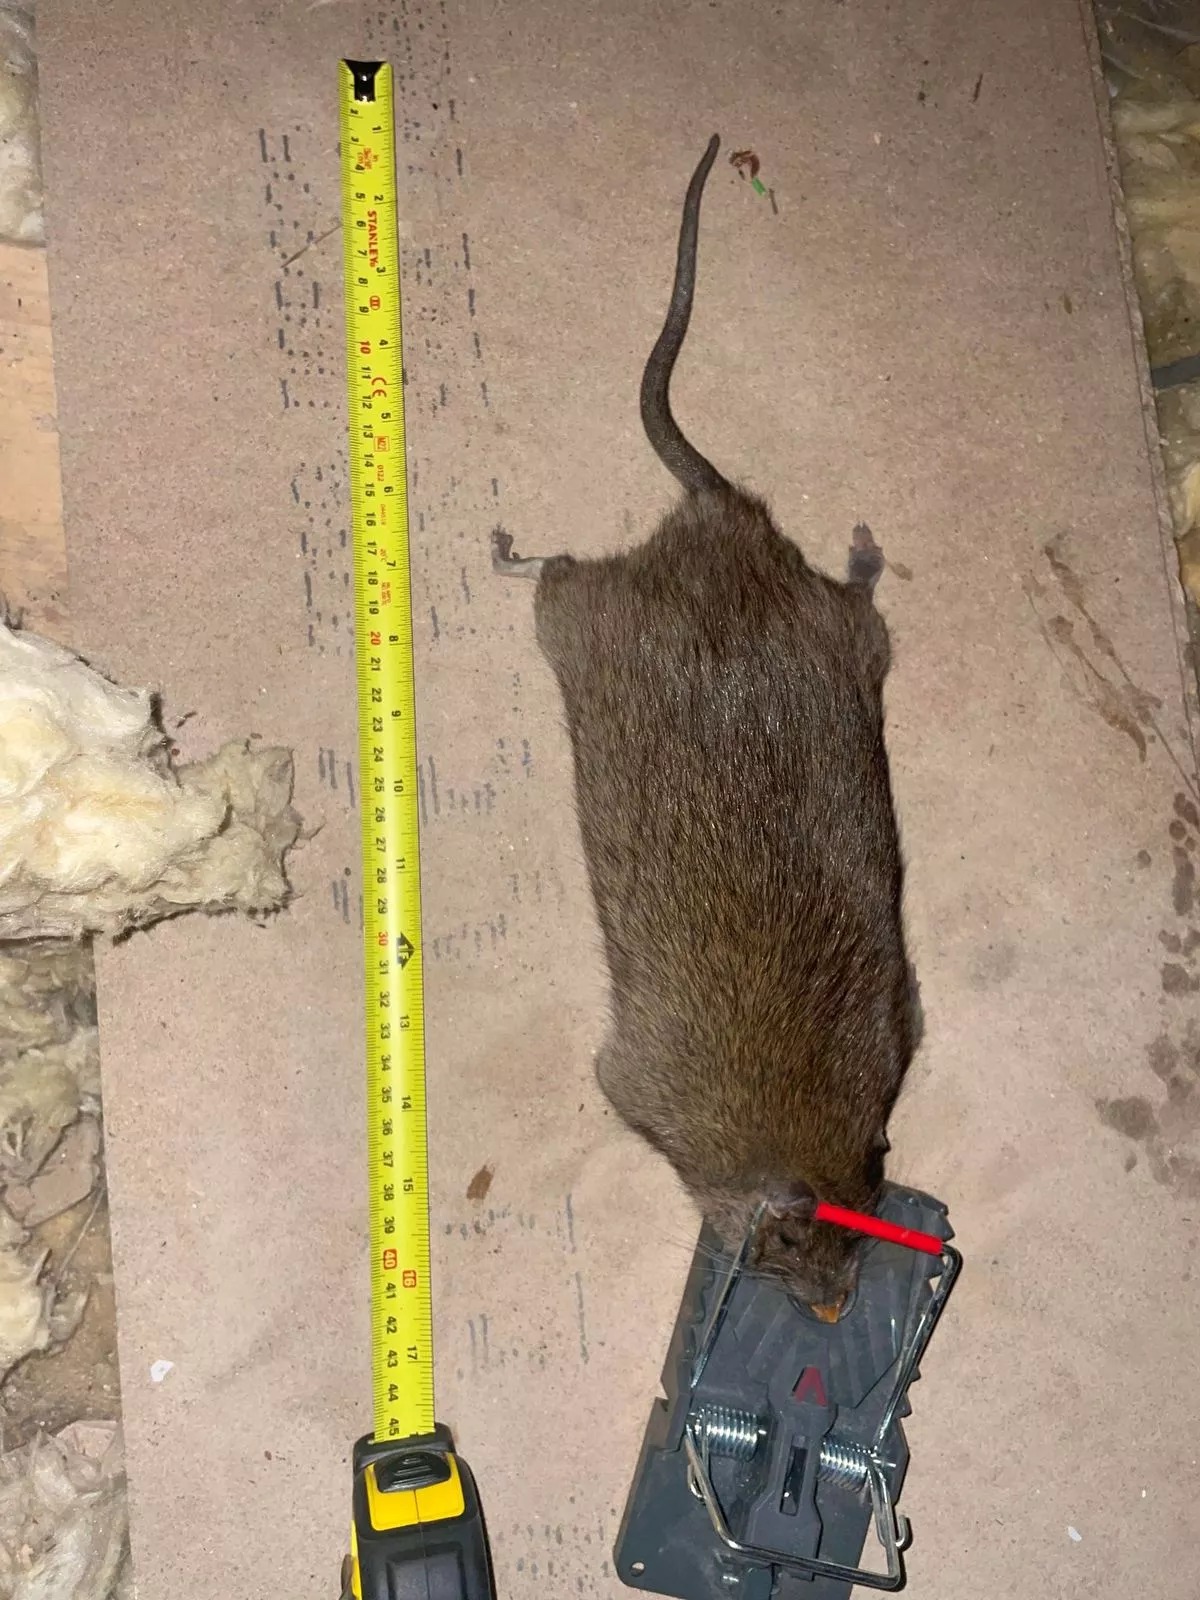 Die größte Ratte, die der Schädlingsbekämpfer je gefangen habe, sei 22 Zoll lang gewesen, behauptet er